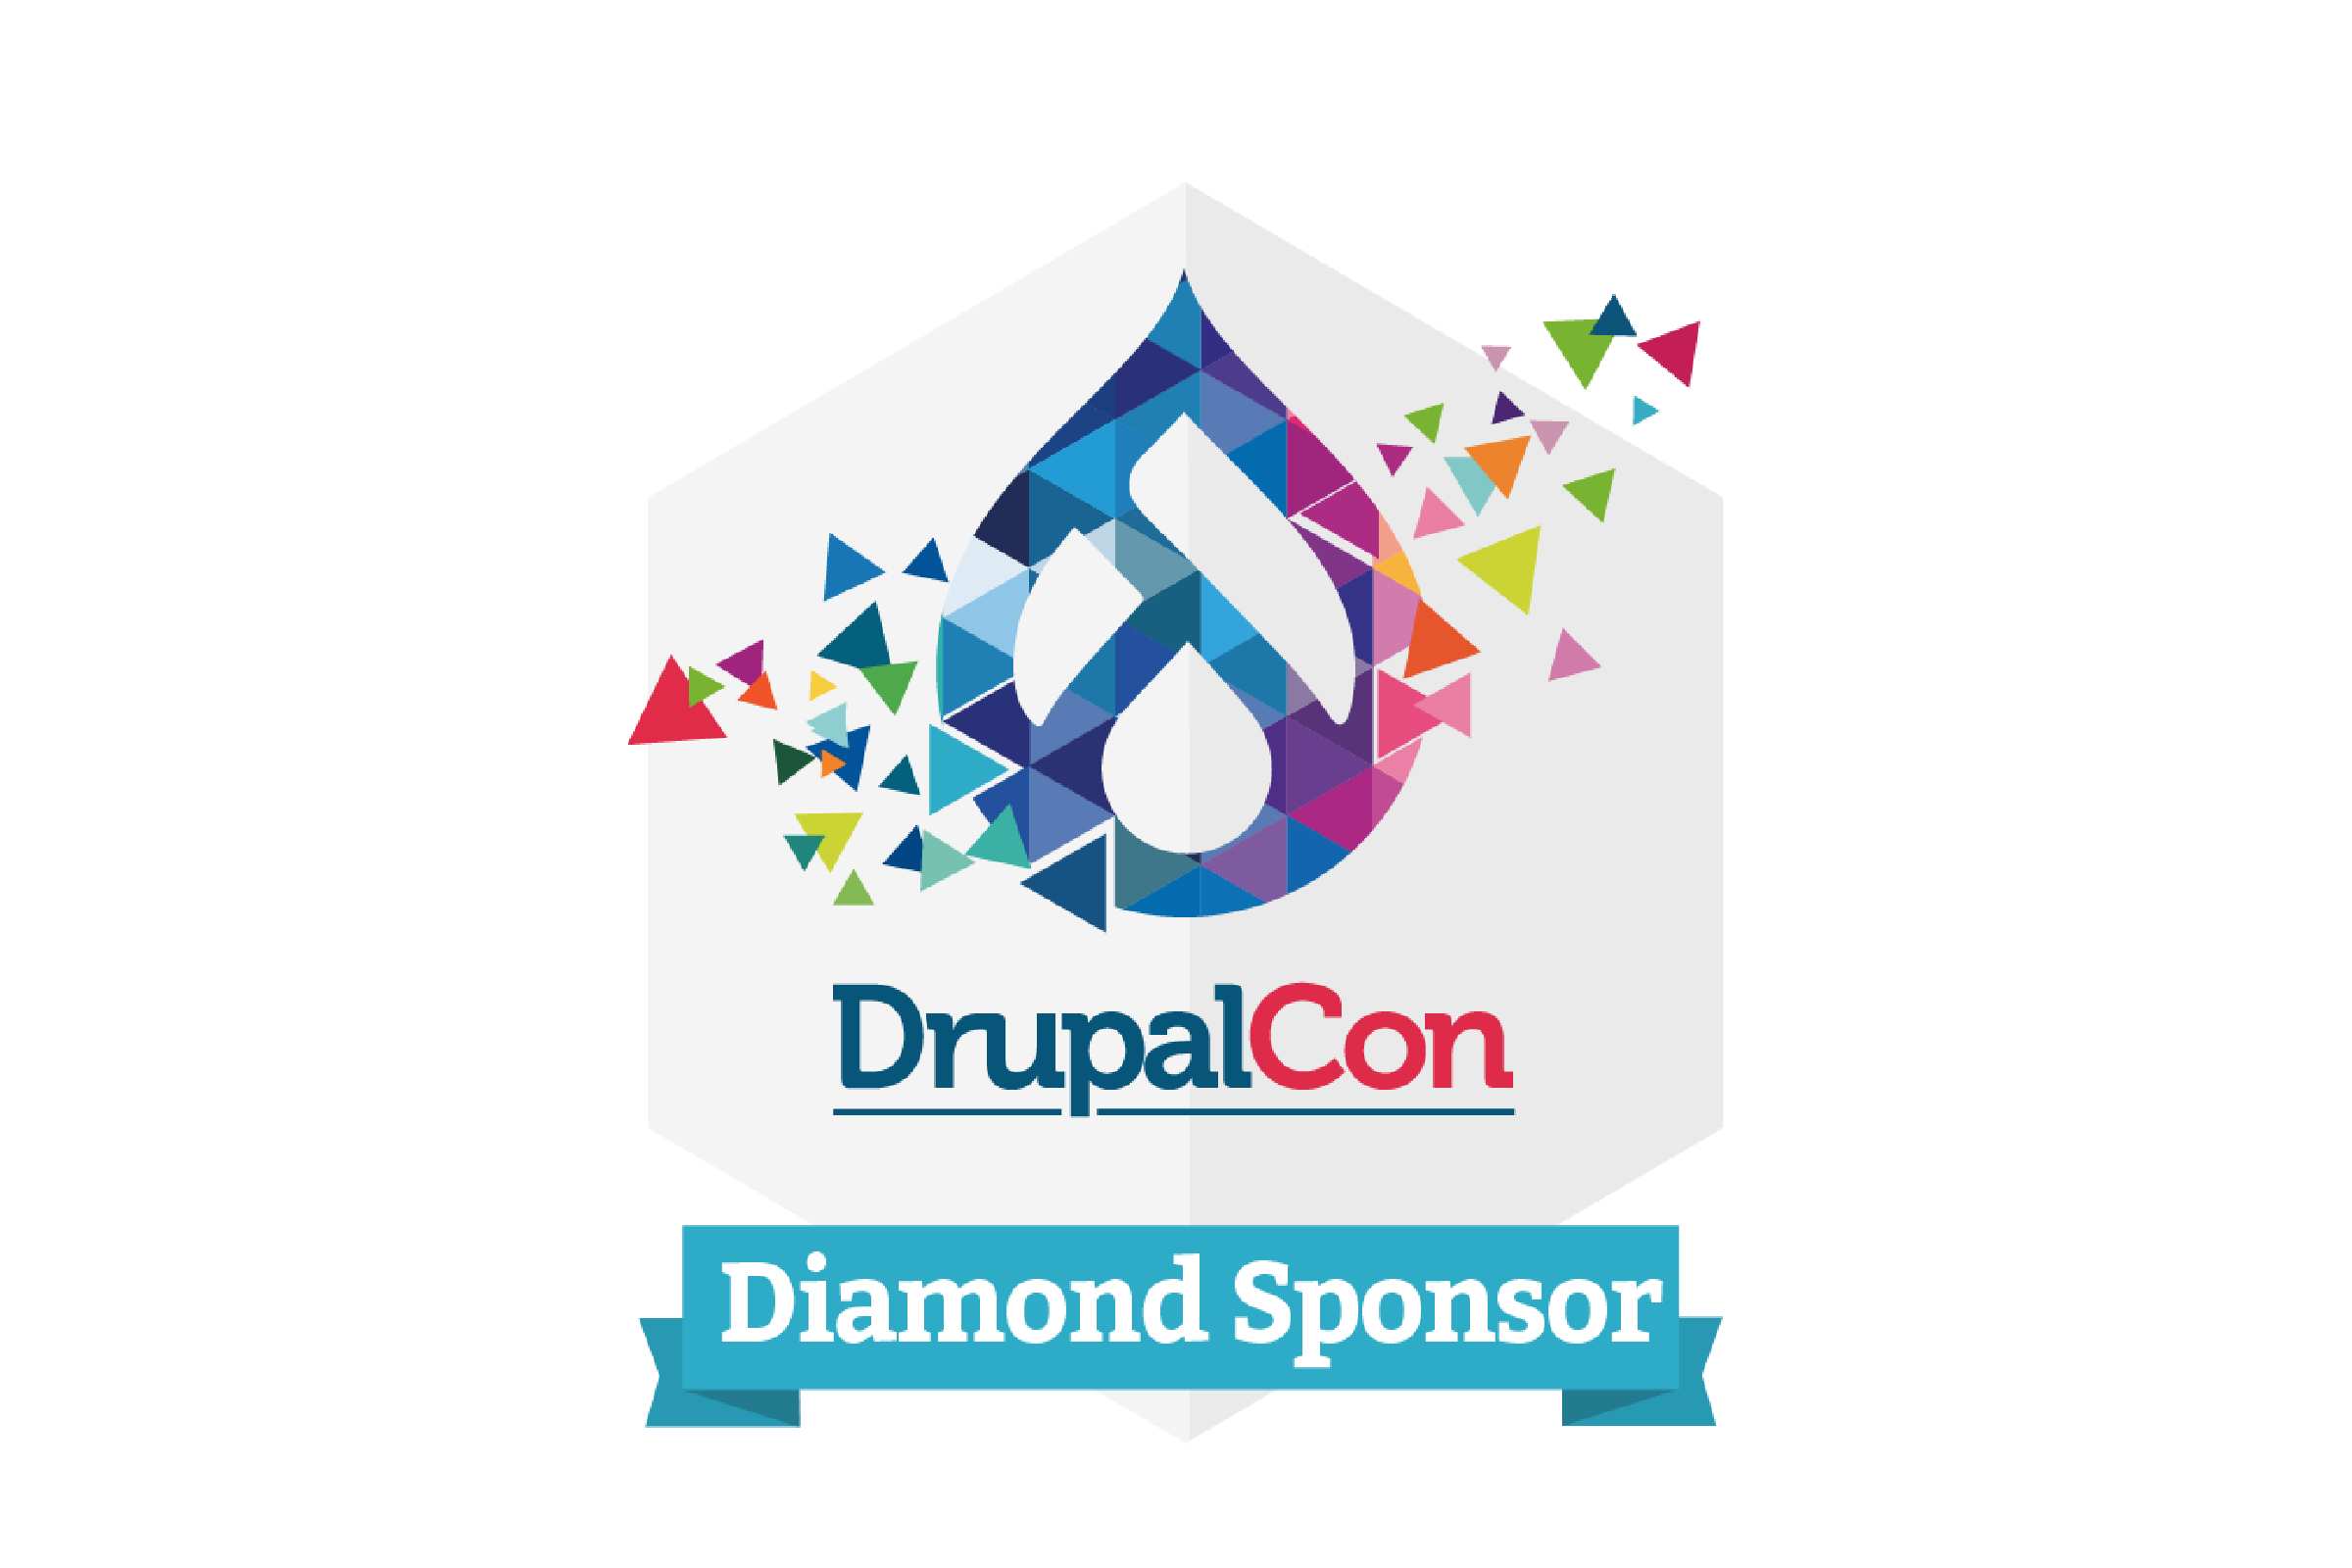 Drupalcon Diamond sponsor